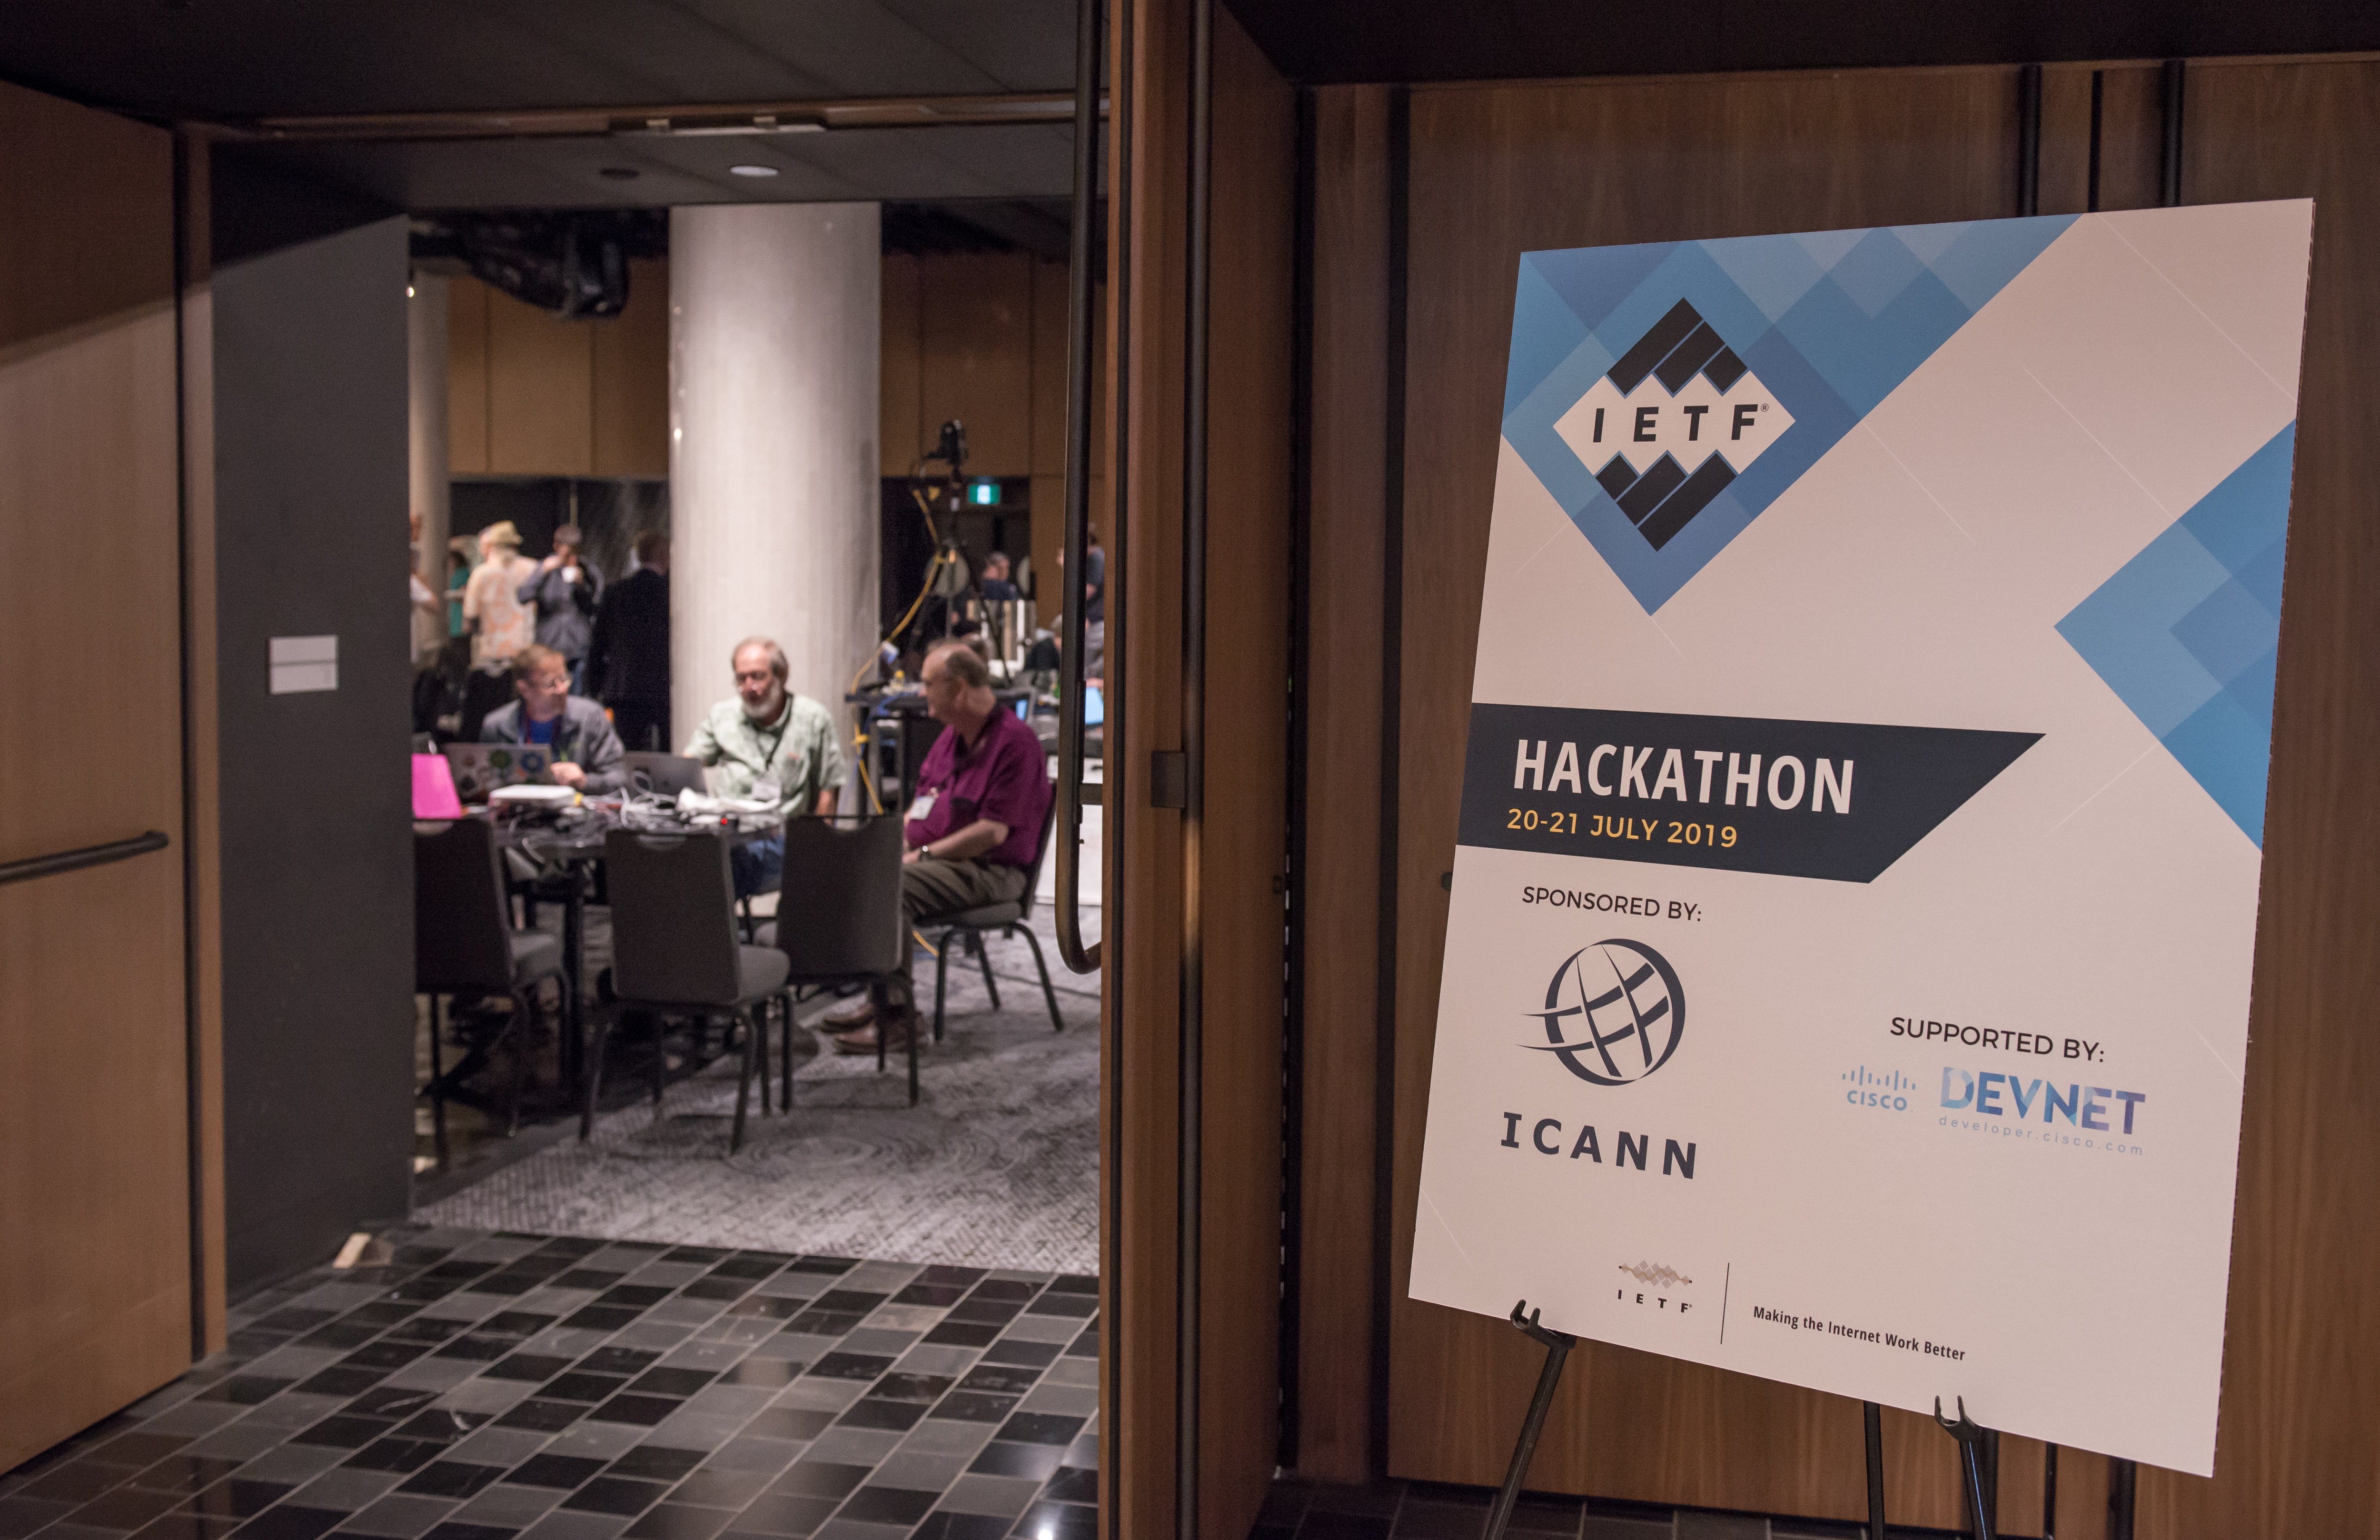 IETF Hackathon Montreal 2019 Sponsors